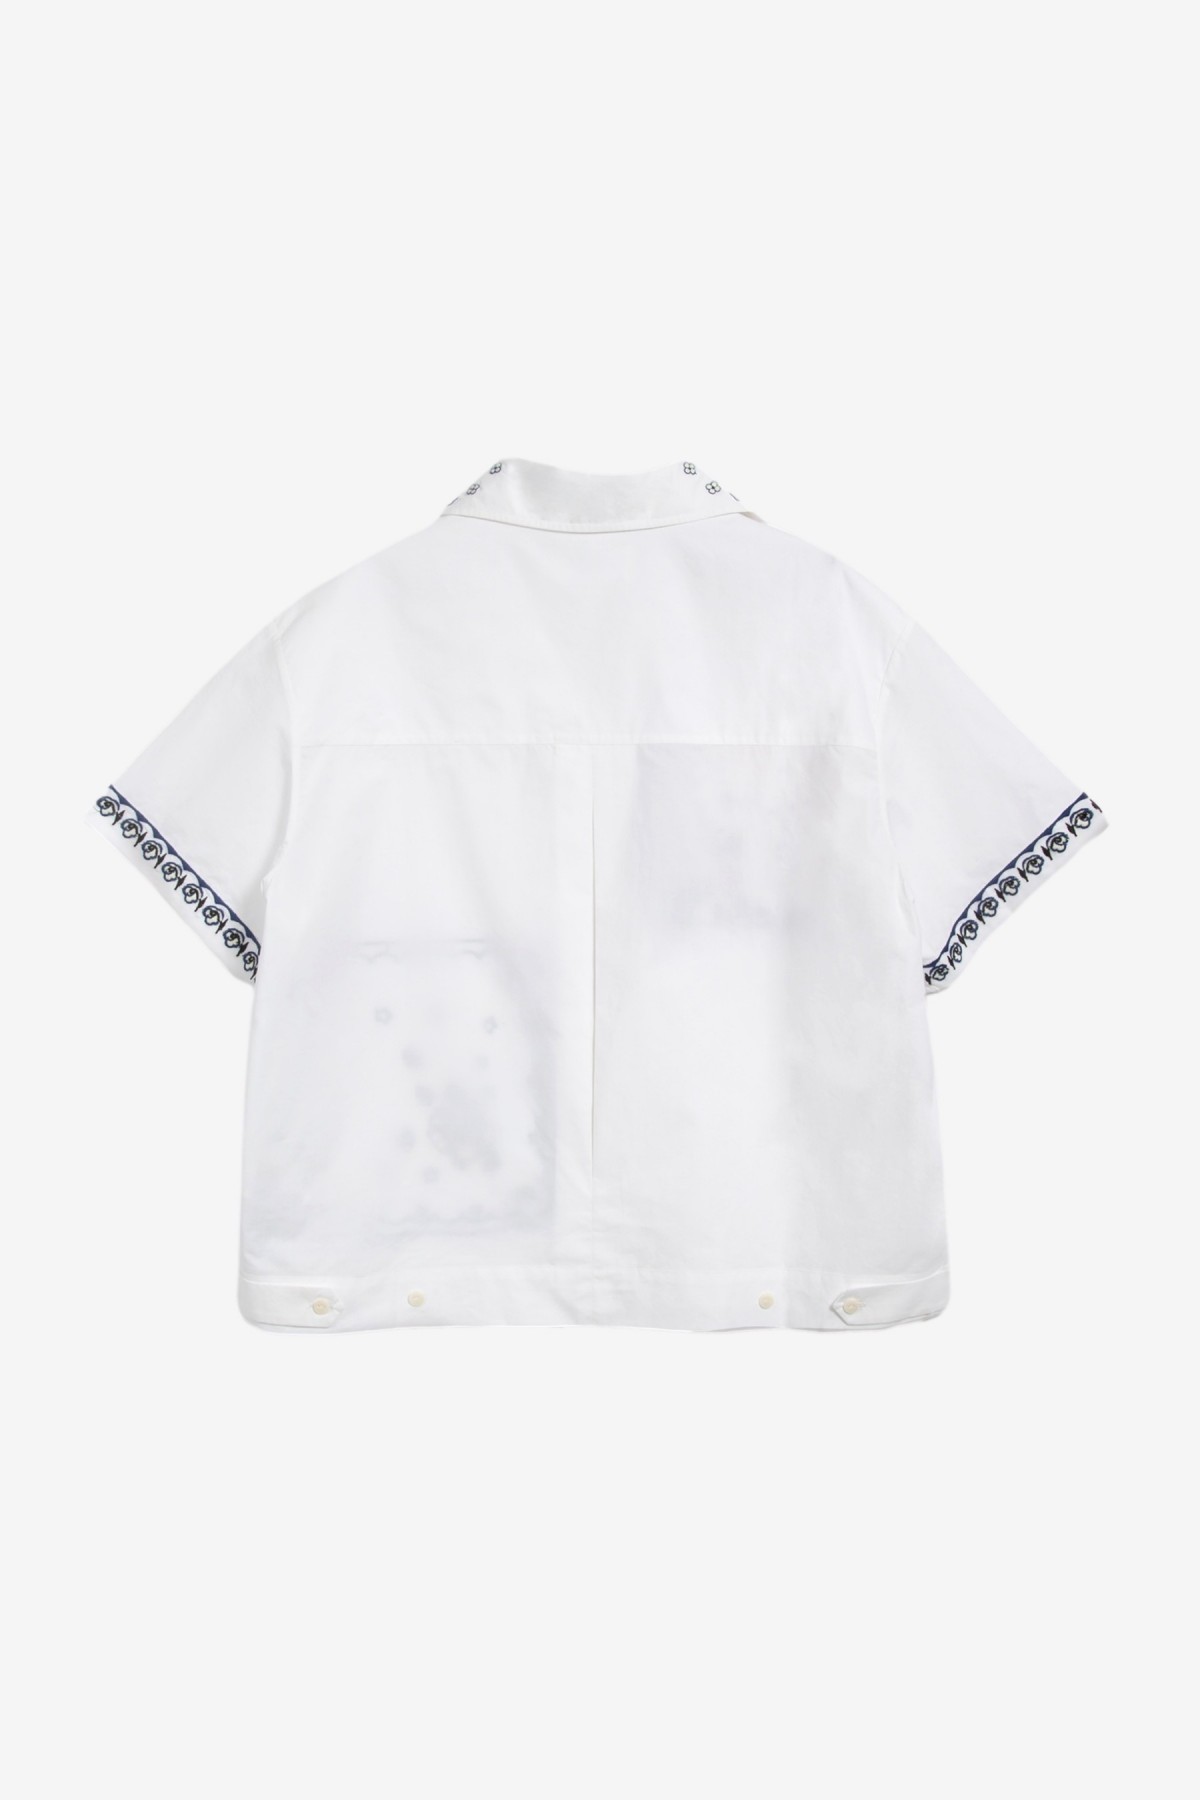 YMC You Must Create Wanda Shirt in White